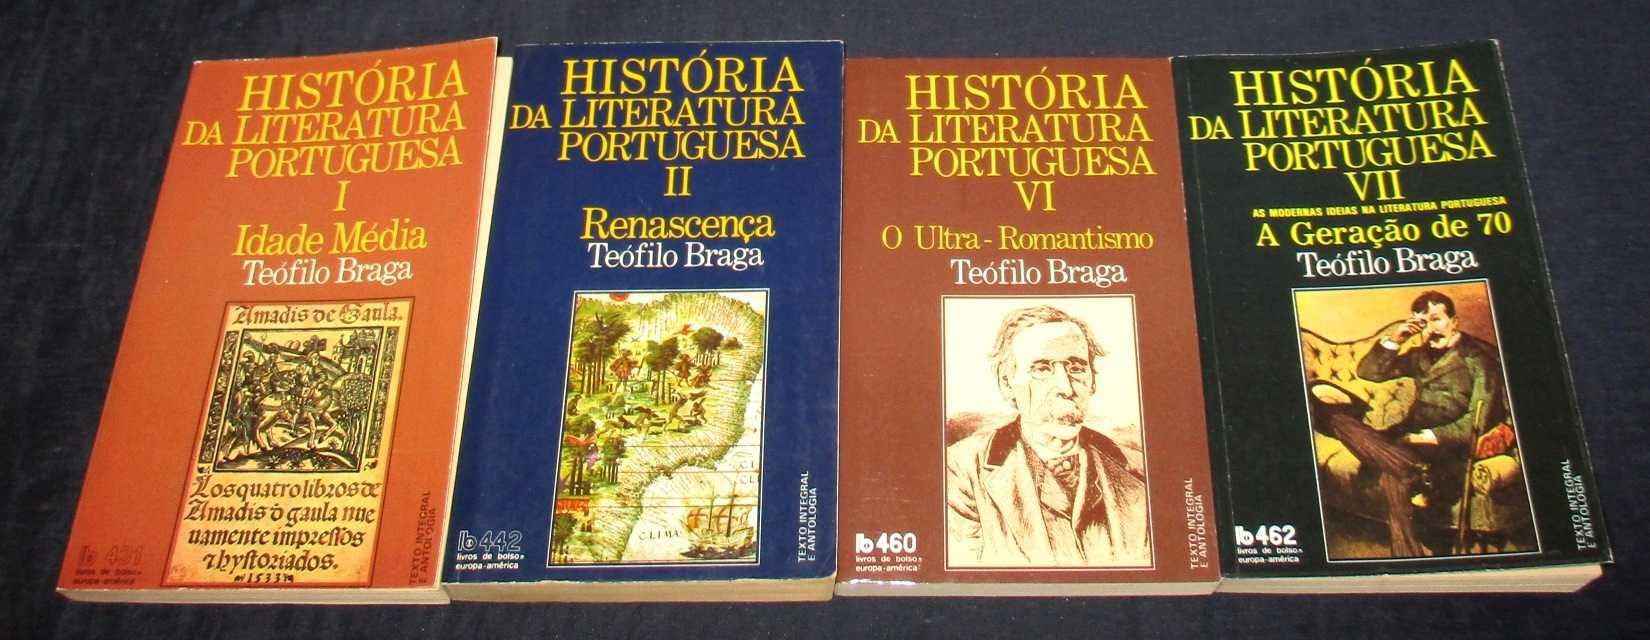 História da Literatura Portuguesa Teófilo Braga